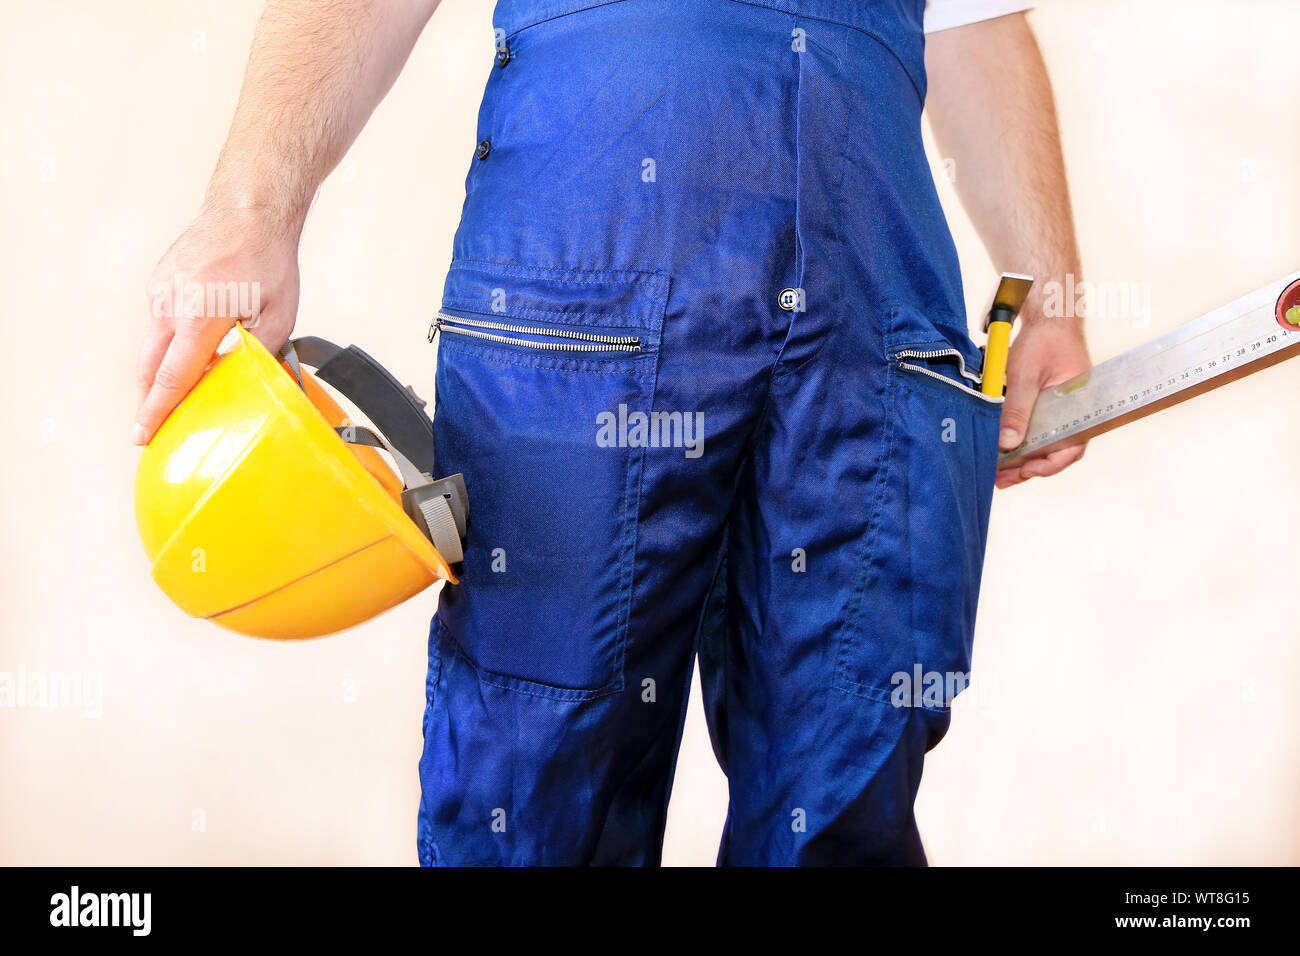 Bauarbeiter auf der Baustelle mit schützenden einheitliche, Bau Service Werkzeuge und Ausrüstung, Overall und hält gelben Helm, Hammer. Stockfoto